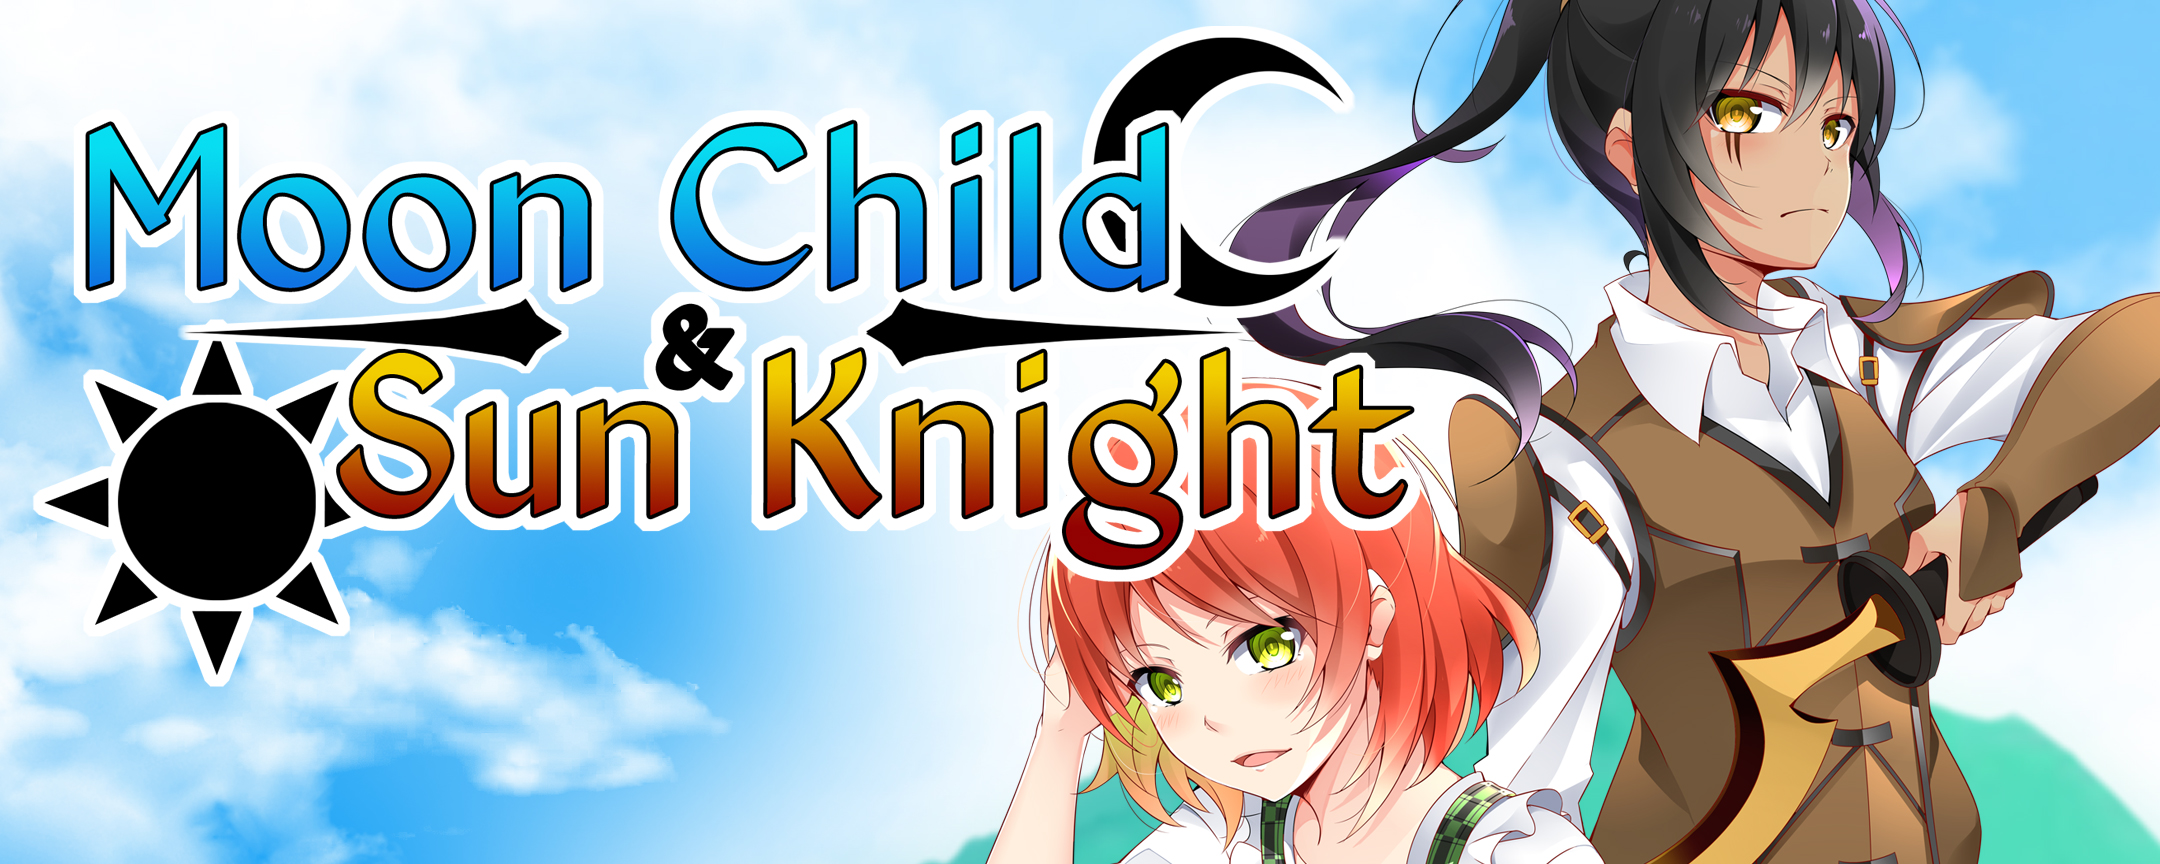 Moon Child & Sun Knight